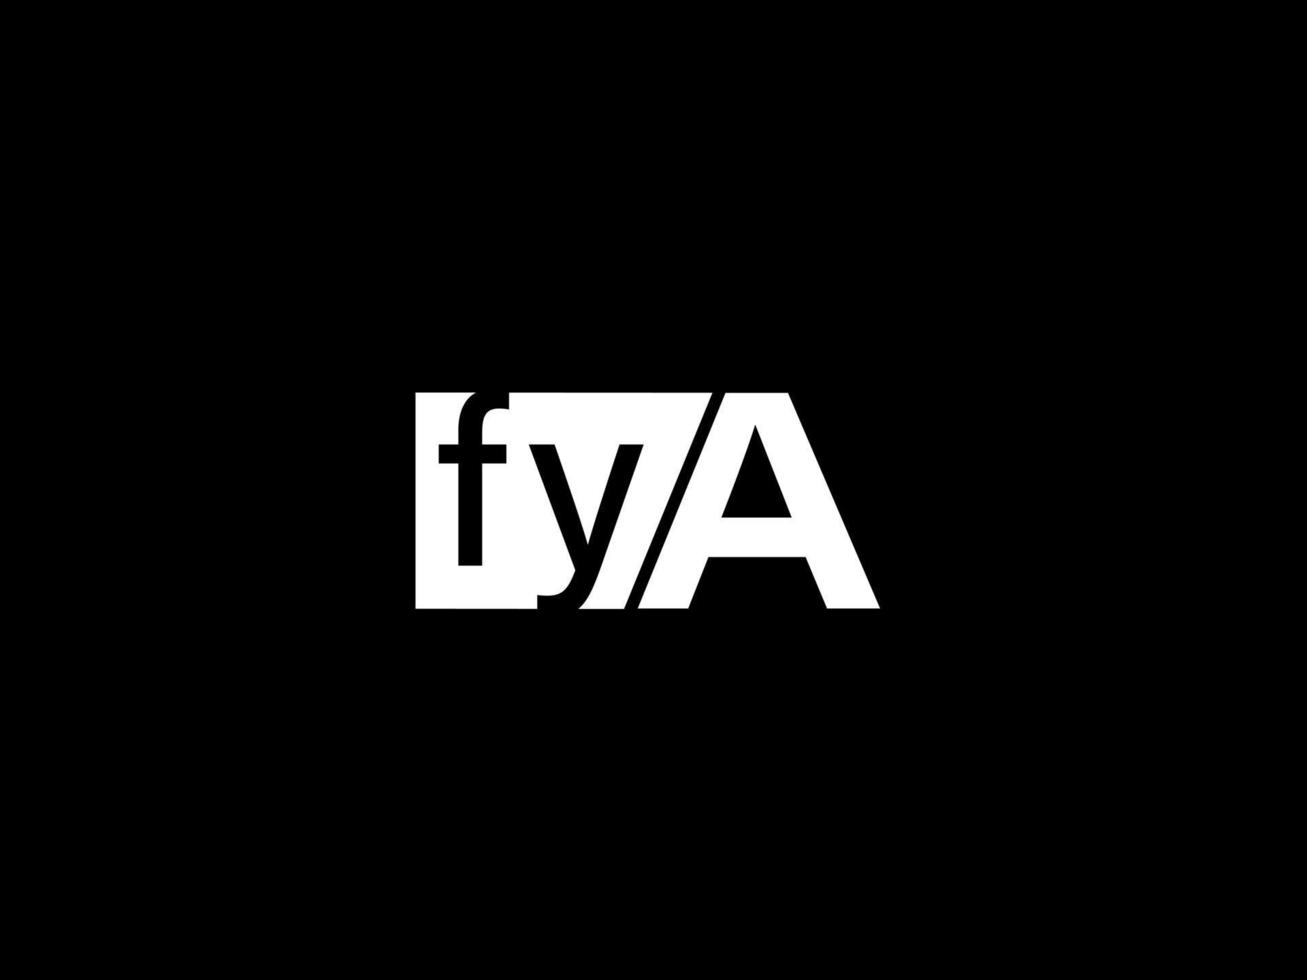 fya-Logo und Grafikdesign Vektorgrafiken, Symbole isoliert auf schwarzem Hintergrund vektor